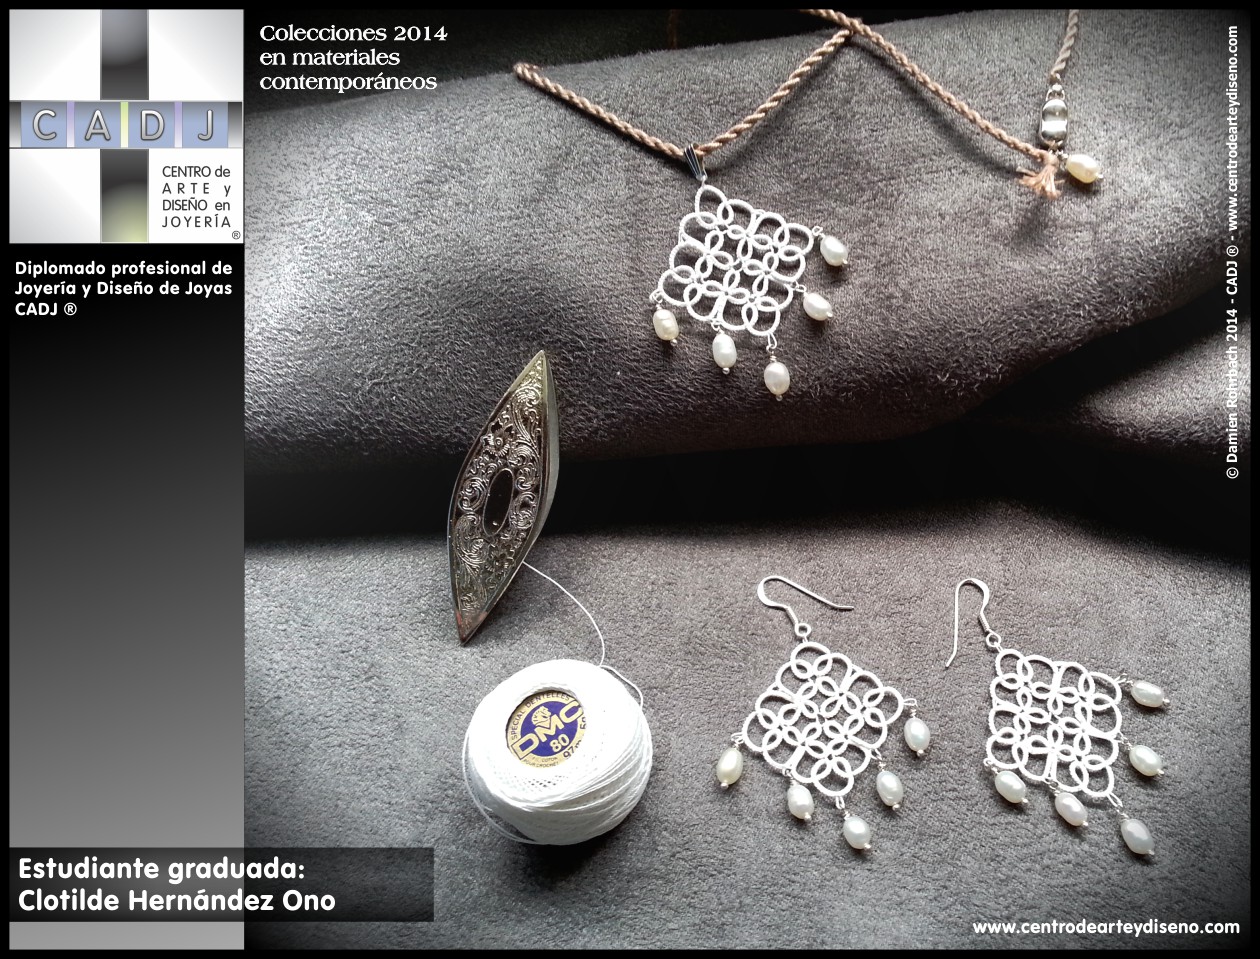 Tejido Frivolité y perlas, creación de joyería contemporánea, Escuela de Arte, Diseño y Joyería CADJ ®